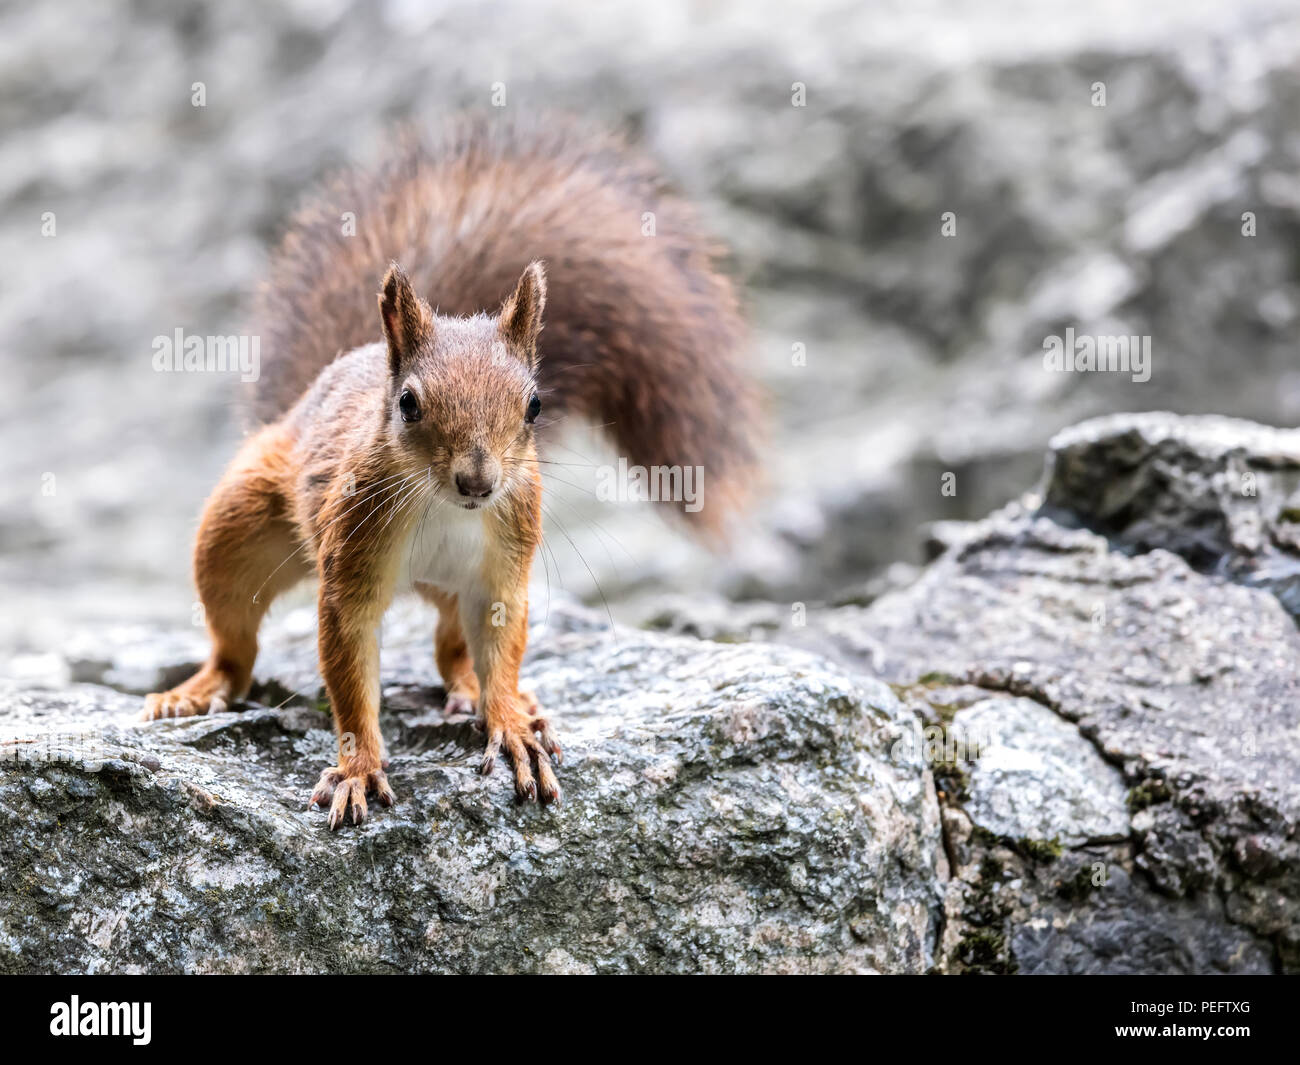 Les jeunes avec écureuil queue pelucheuse debout sur grand parc en pierre grise, vue rapprochée Banque D'Images